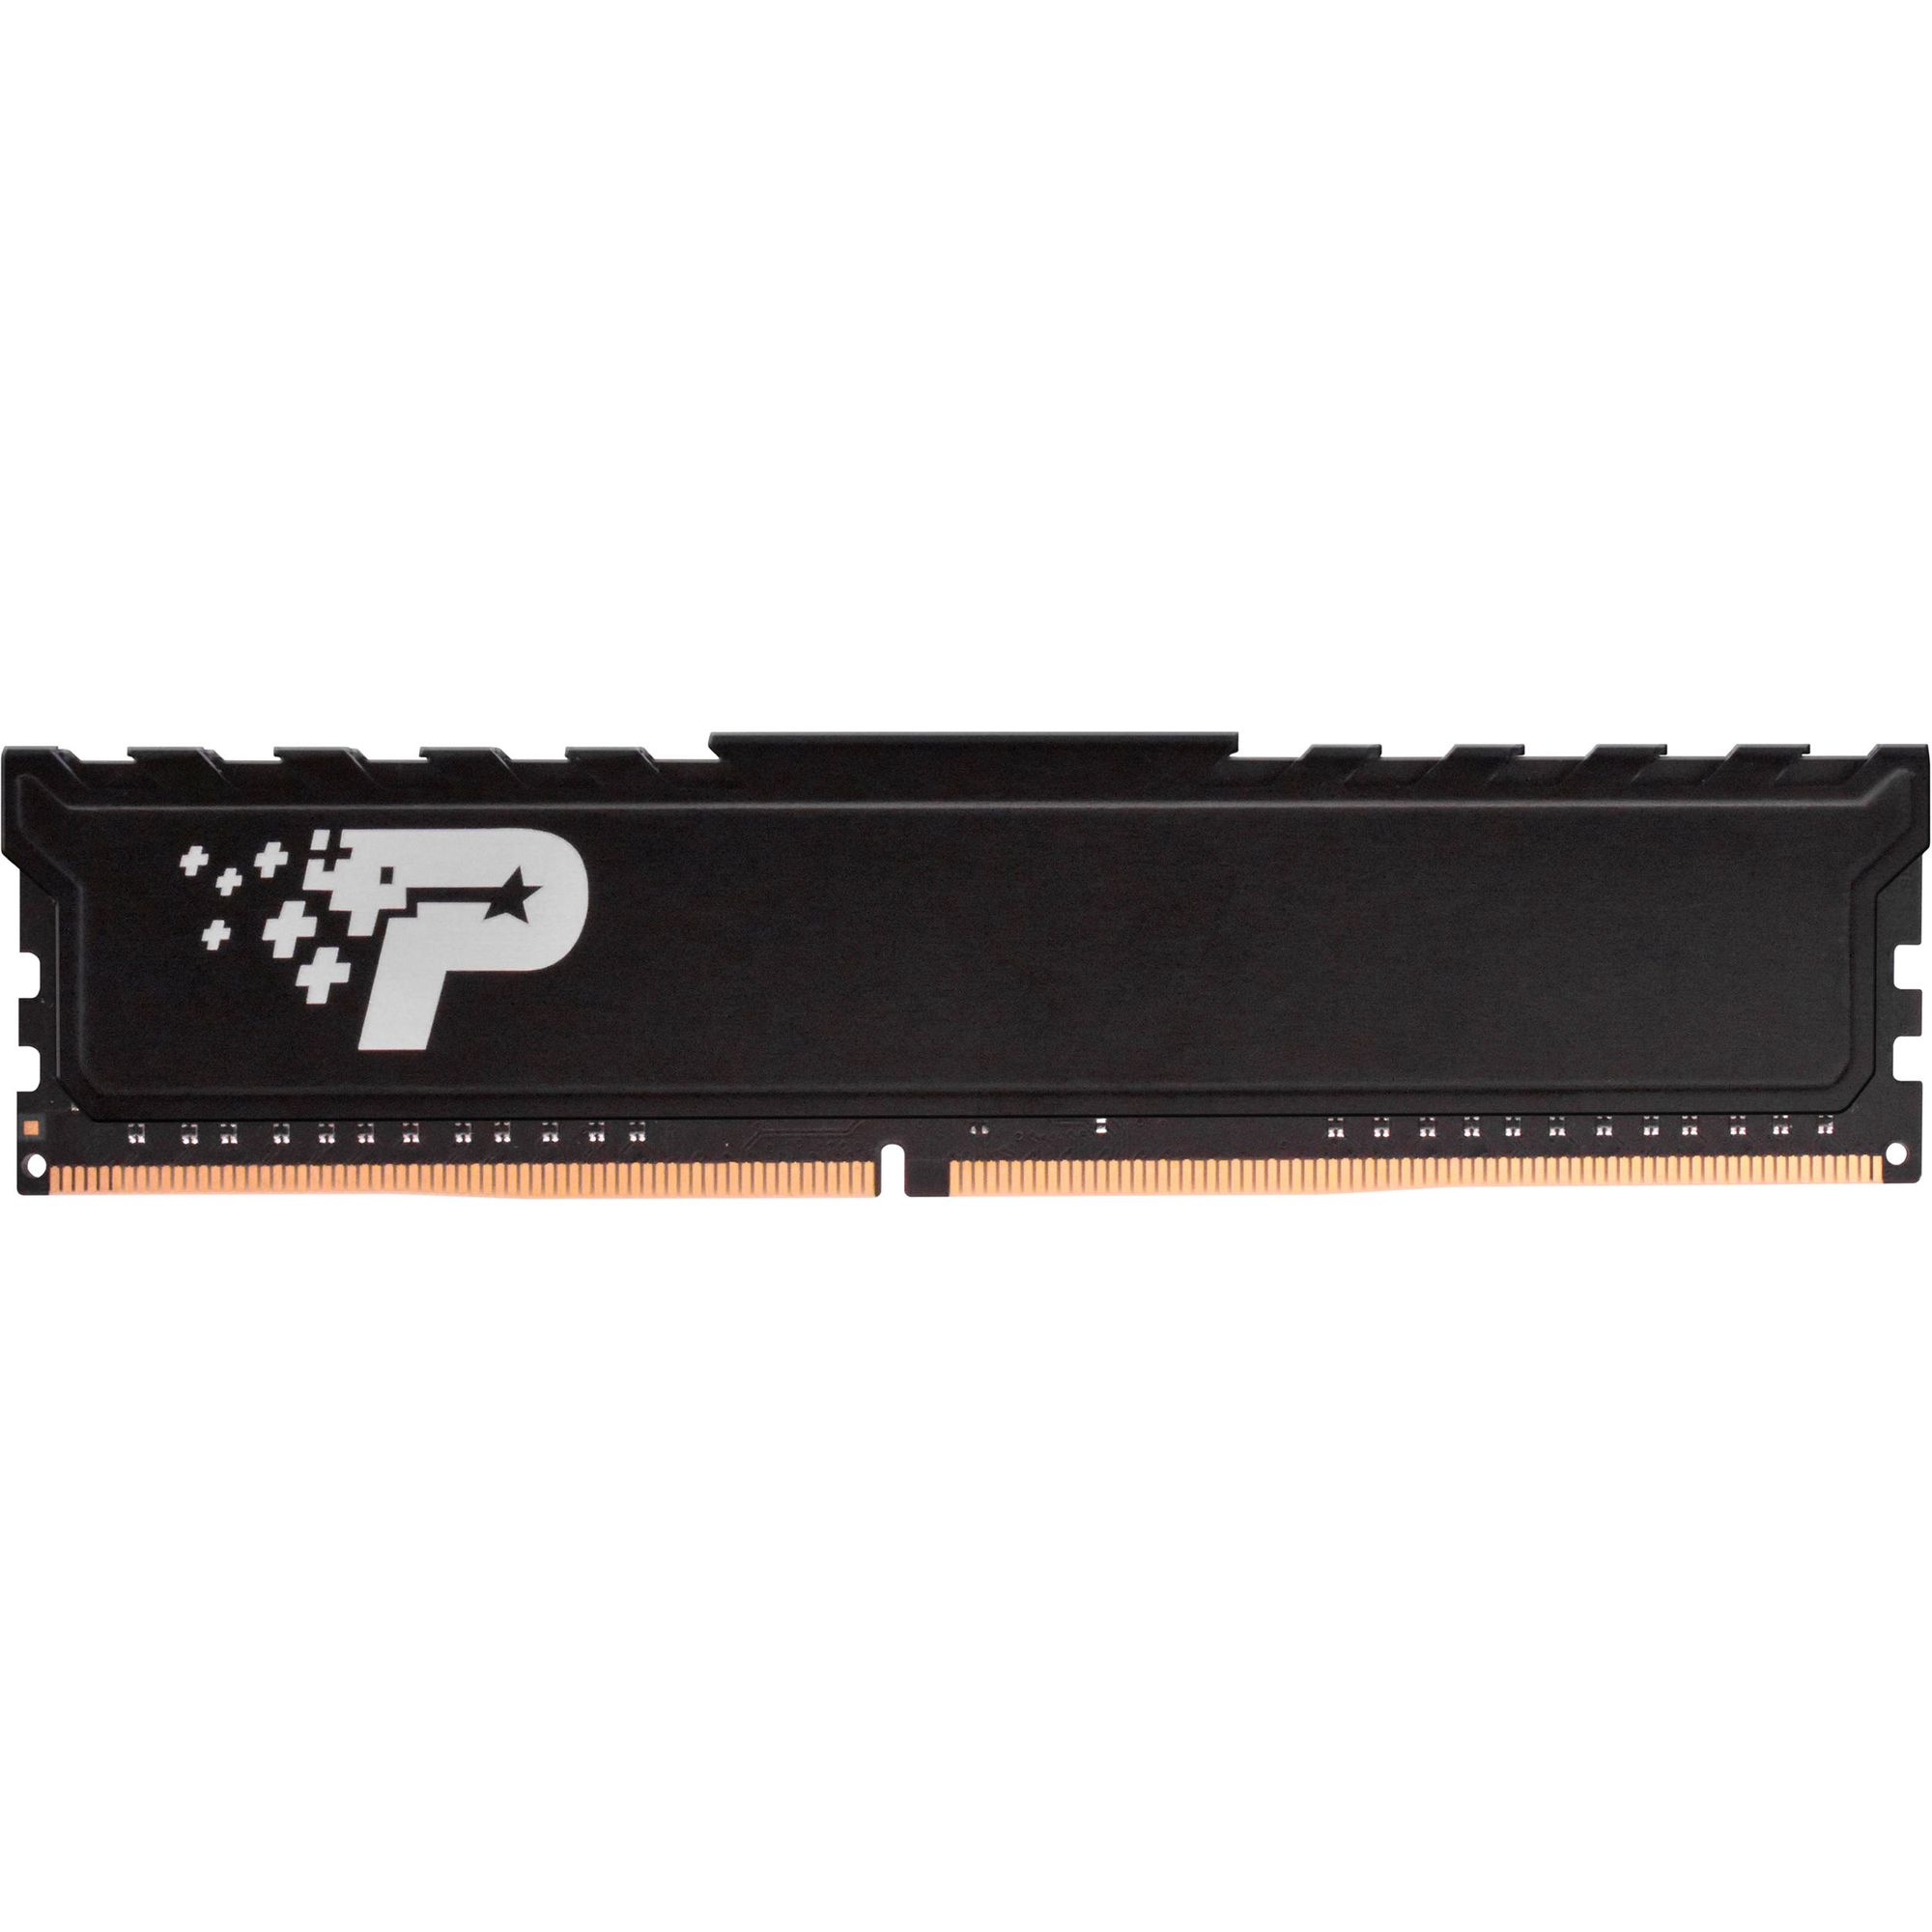 цена Память оперативная DDR4 Patriot Memory SL Premium 16Gb 2666MHz (PSP416G26662H1)